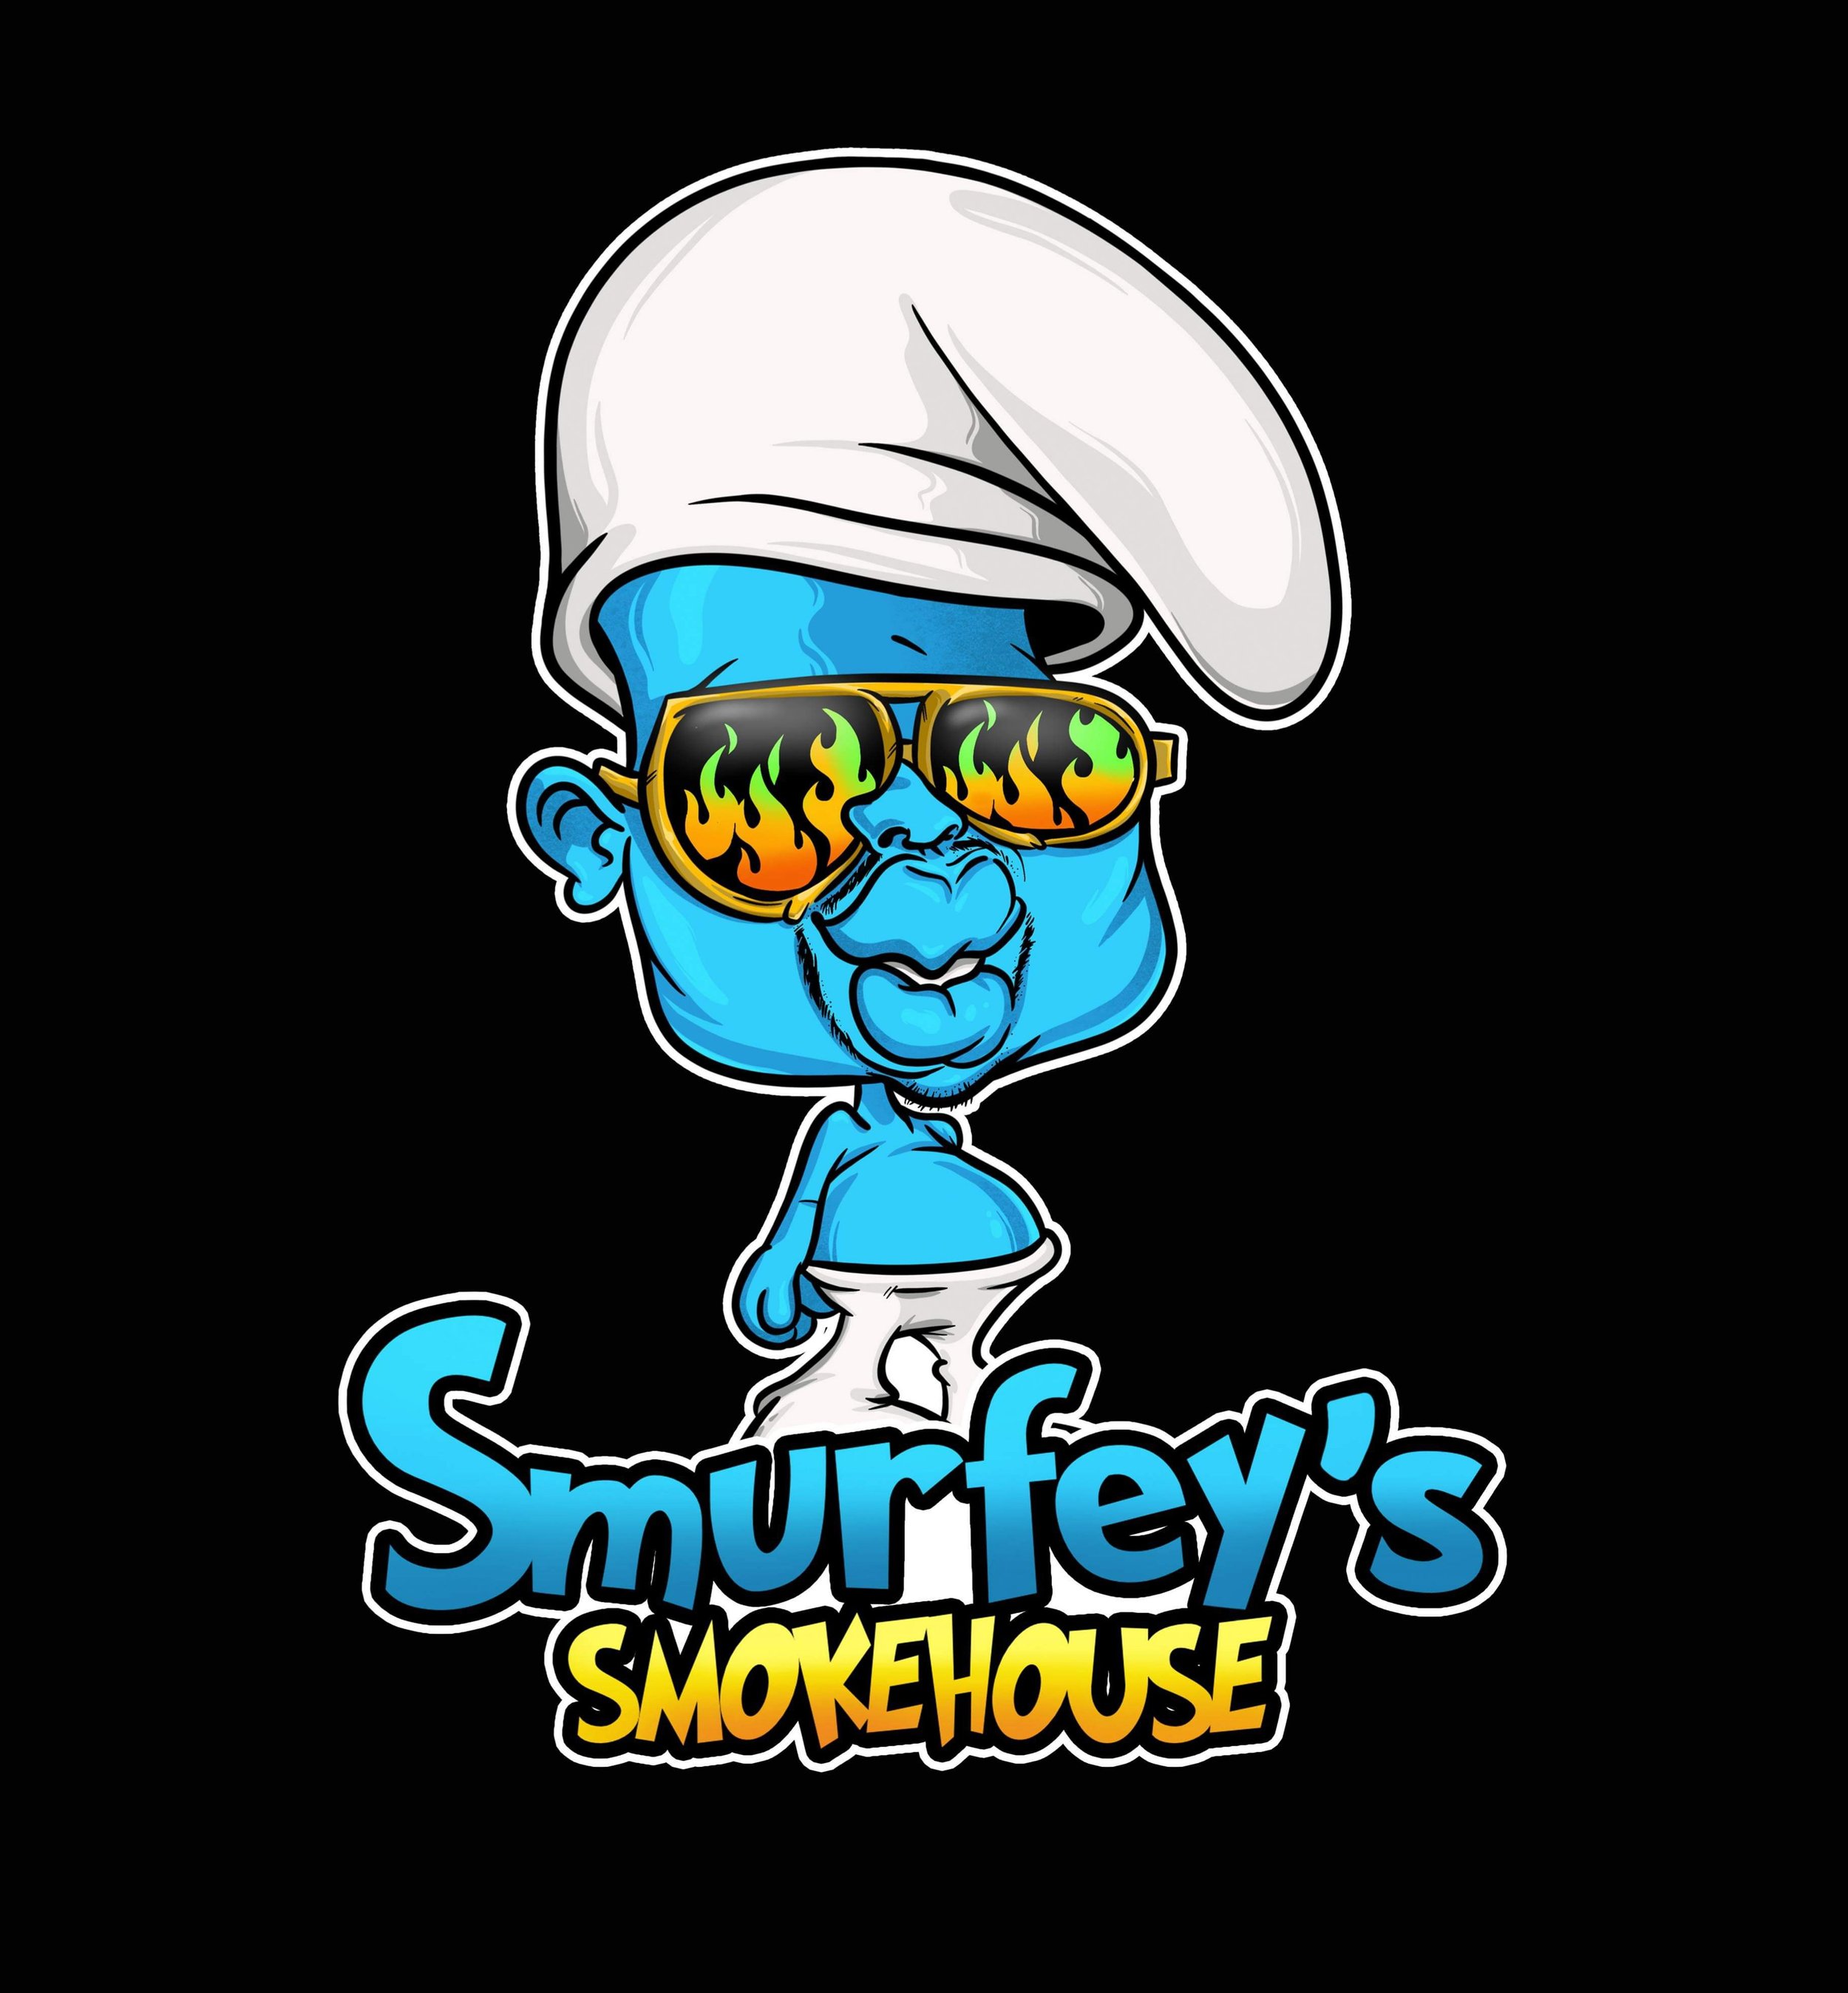 Smurfys Smokehouse.jpg